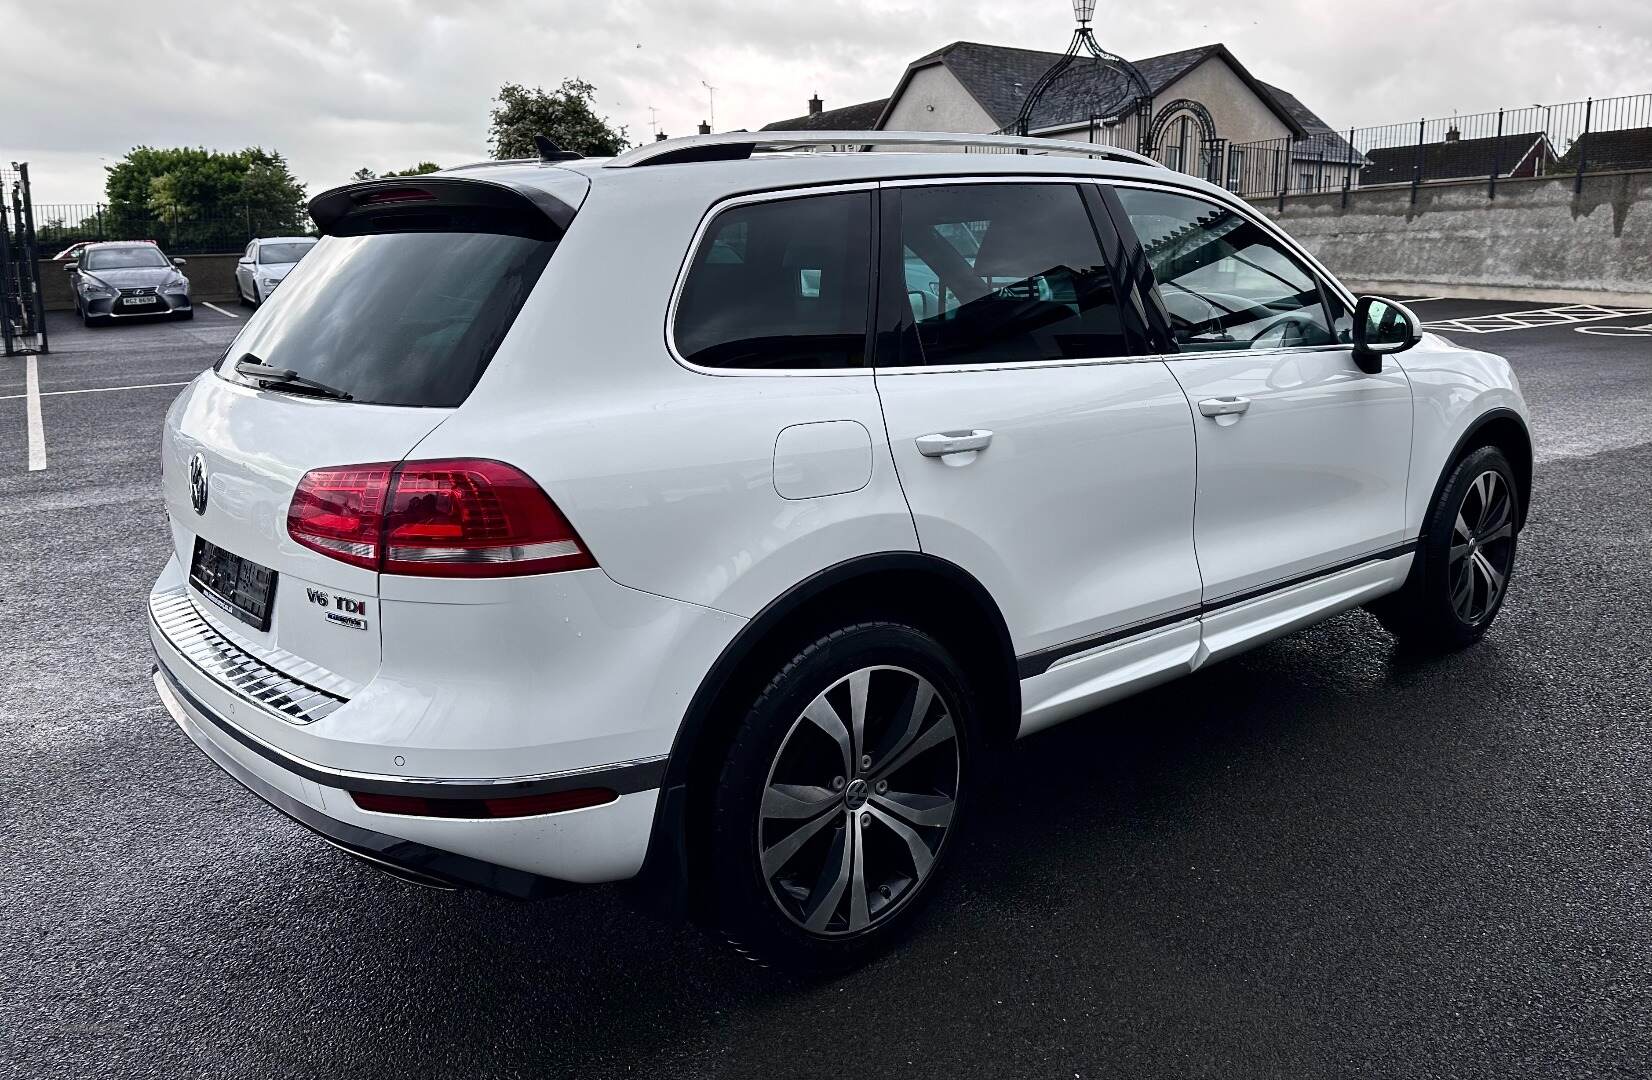 Volkswagen Touareg DIESEL ESTATE in Fermanagh